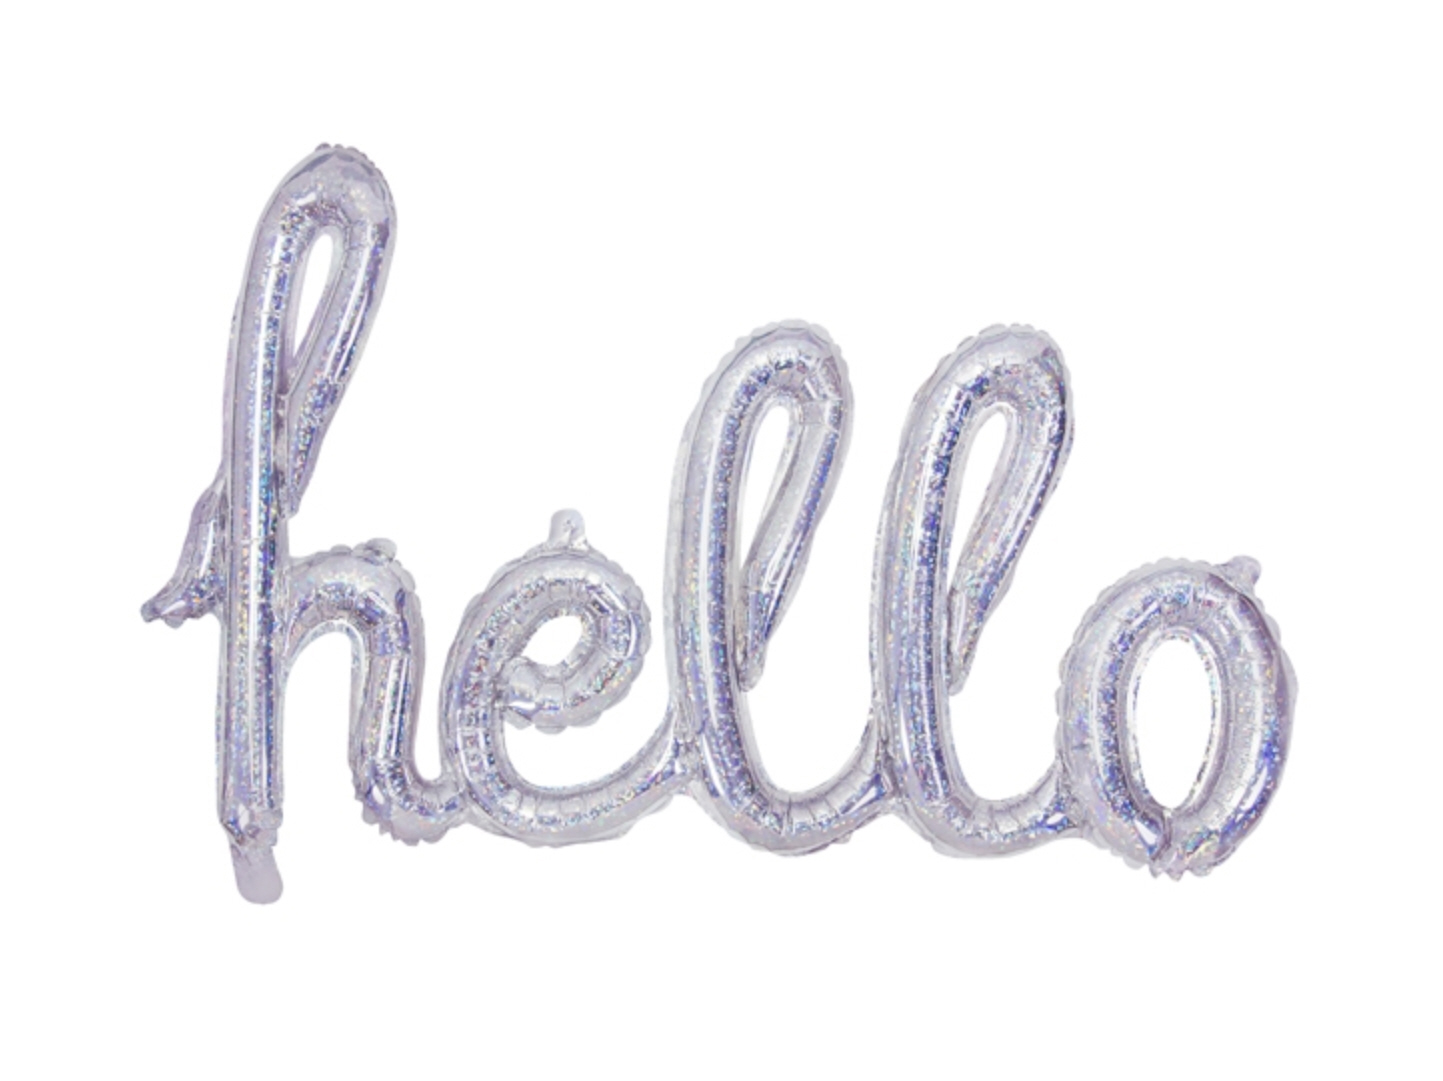 Folienluftballon Schriftzug "hello" silber holographic 72x45cm